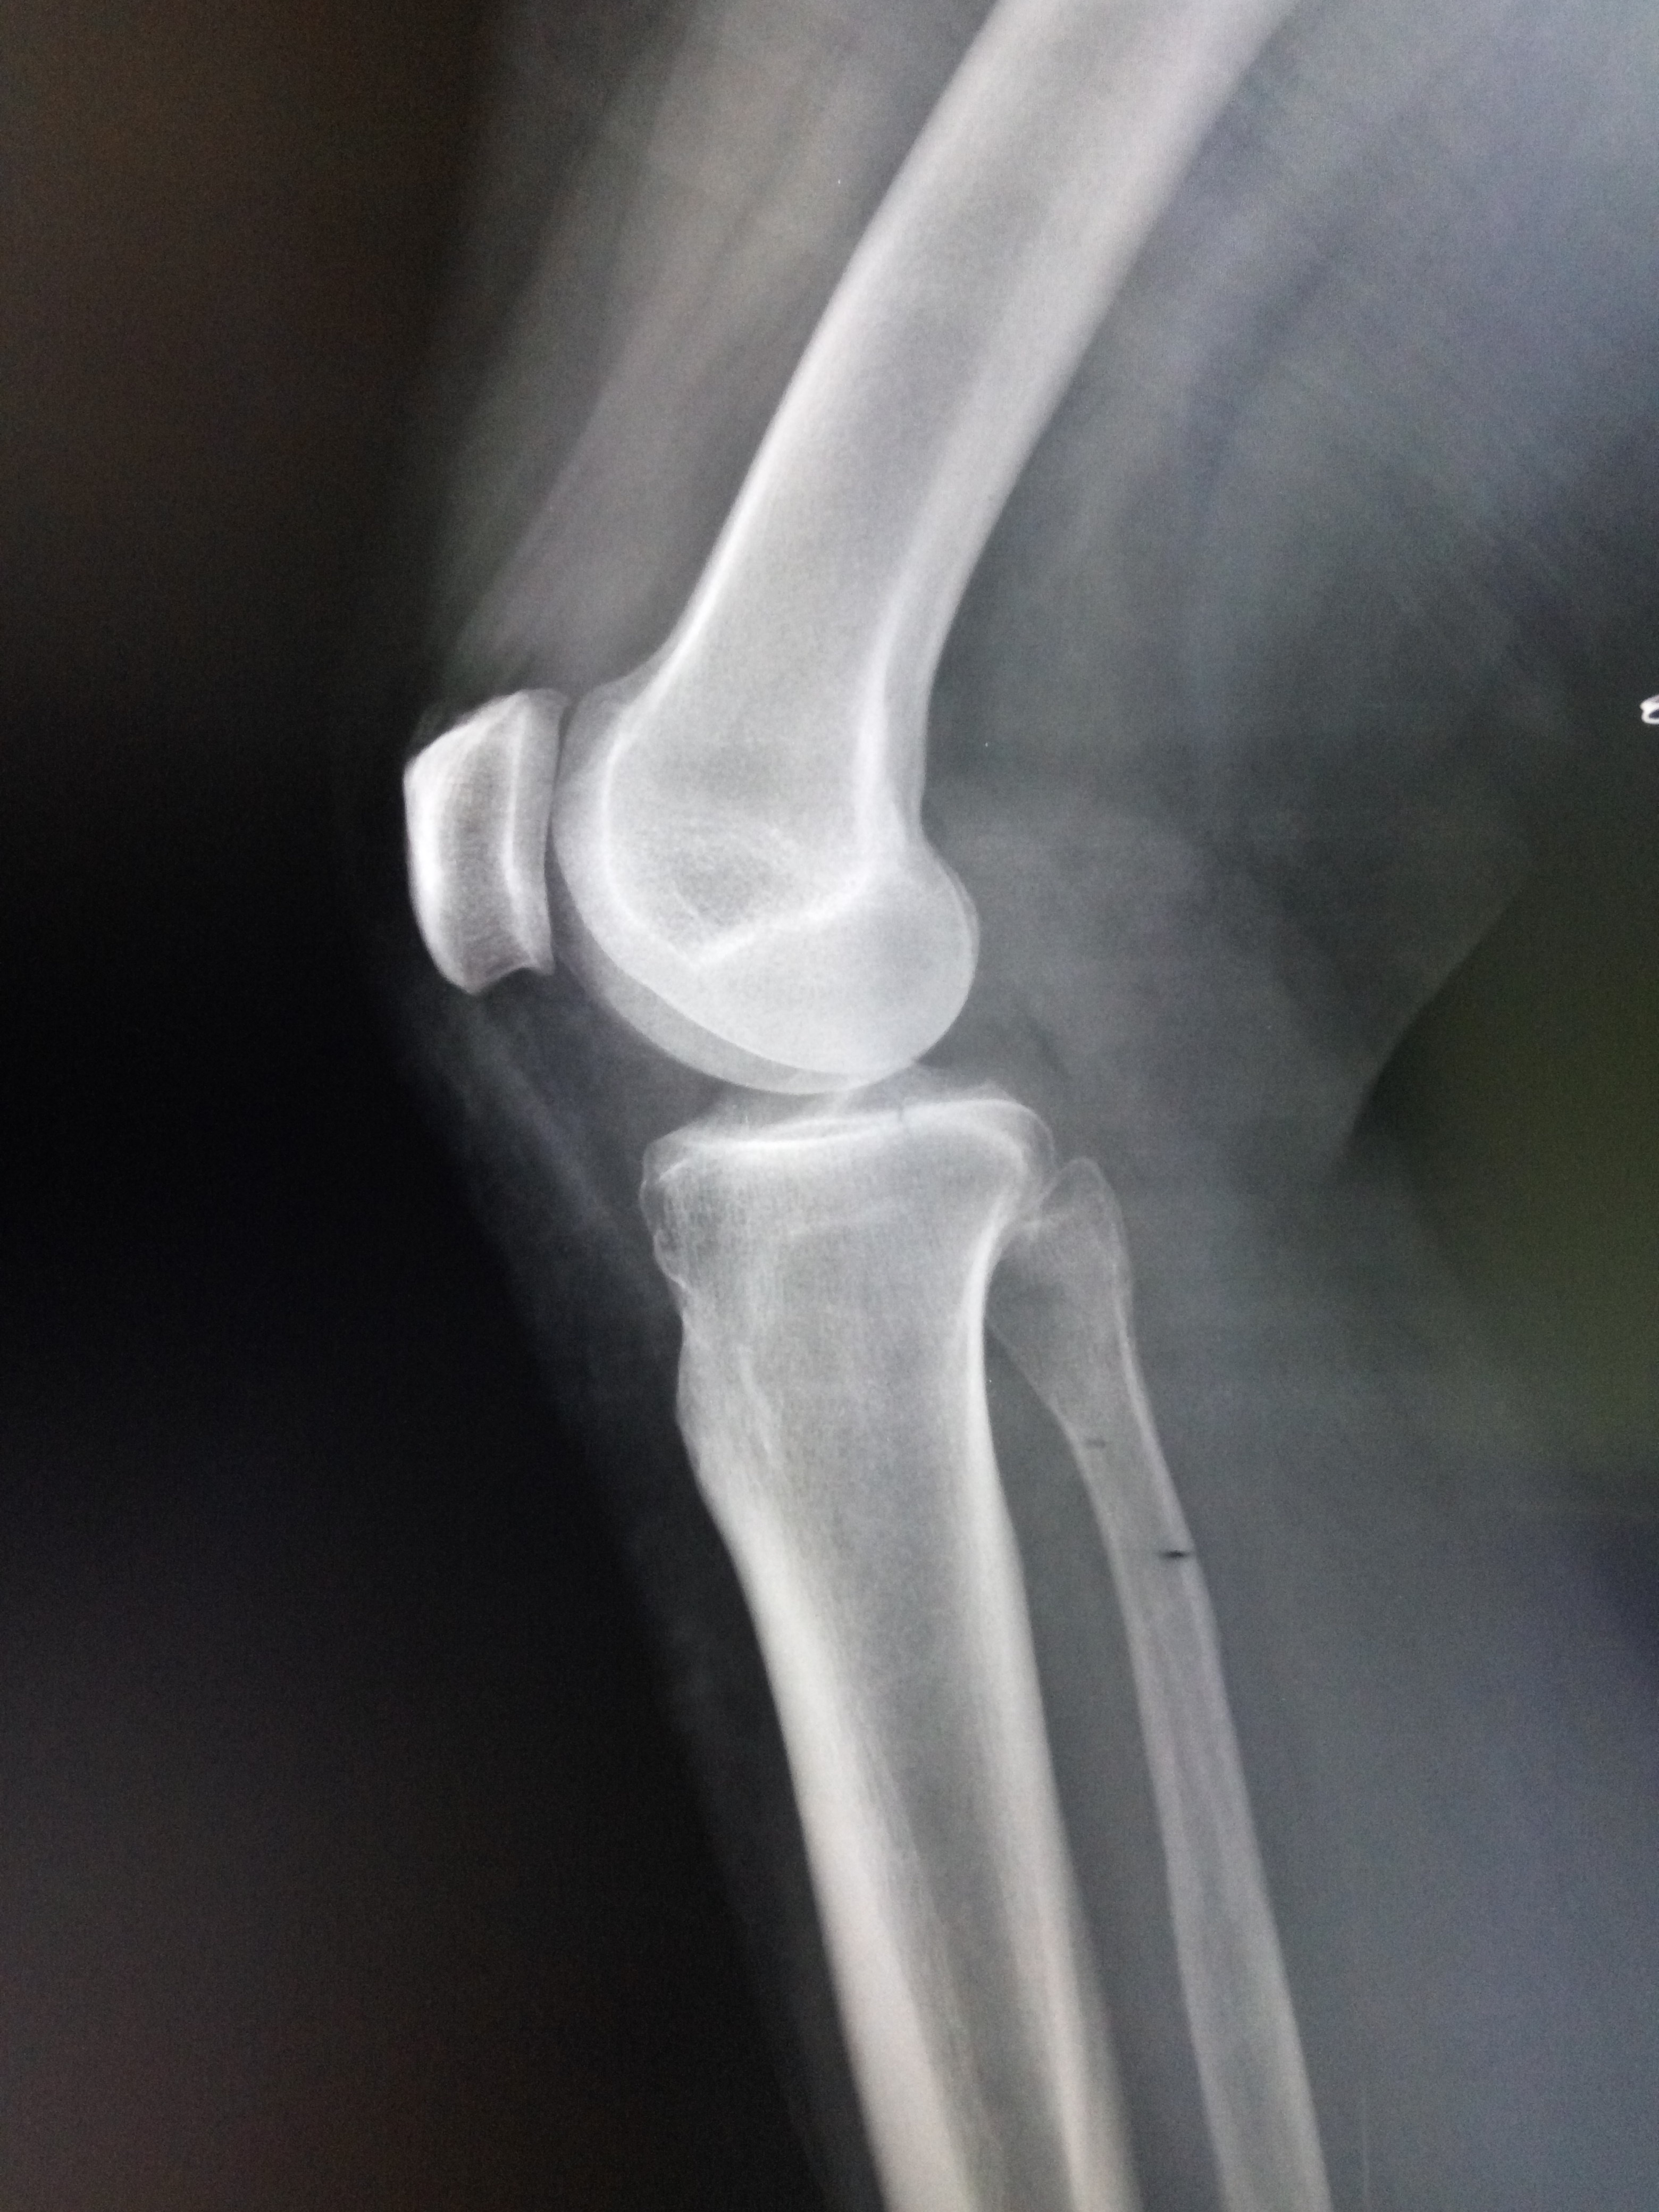 Перелом бугристости большеберцовой кости рентген